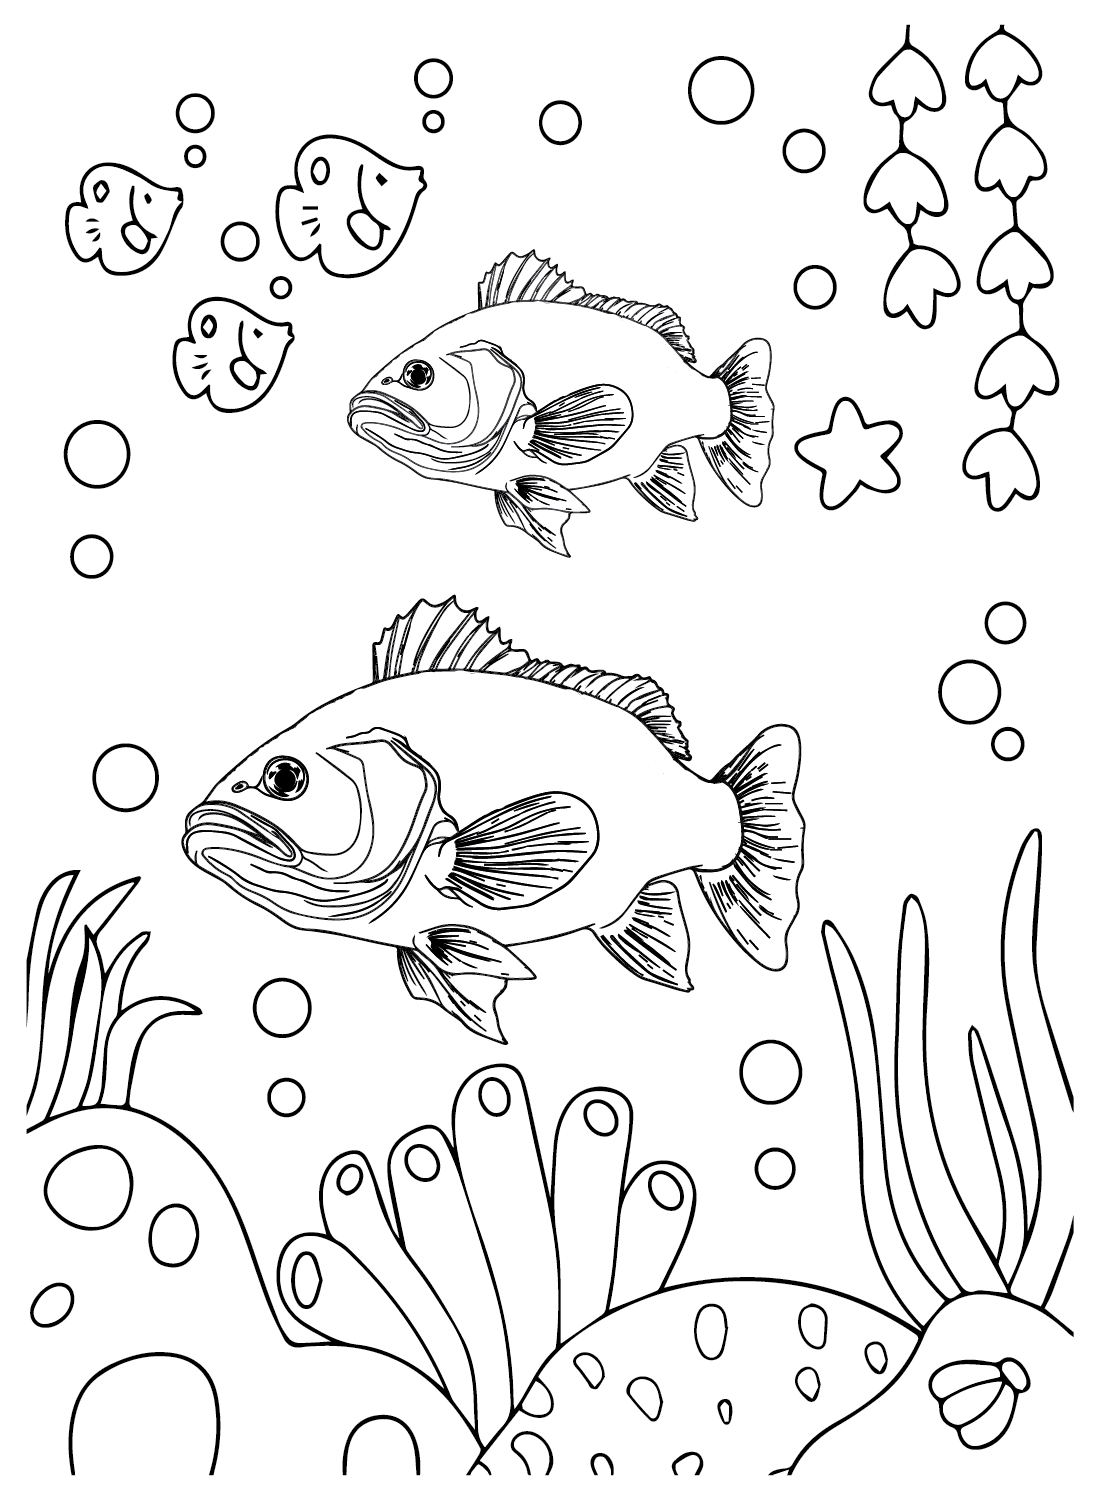 Bass Fish para imprimir de Bass Fish